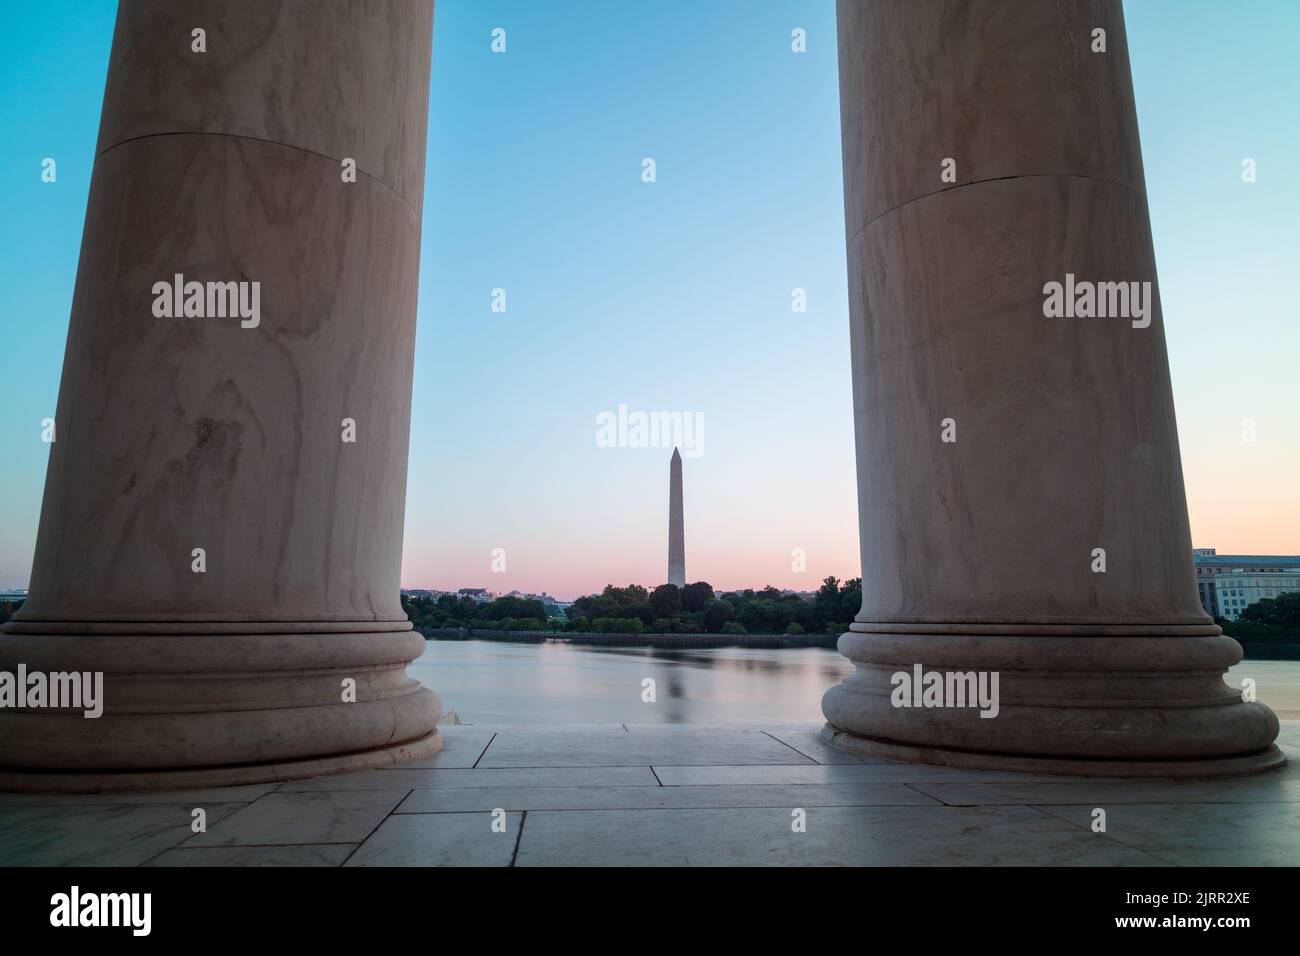 El Monumento a Washington y la Casa Blanca se ven desde el otro lado de la Cuenca Tidal, enmarcados por dos columnas en el Monumento a Jefferson. Amanecer durante el verano. Foto de stock